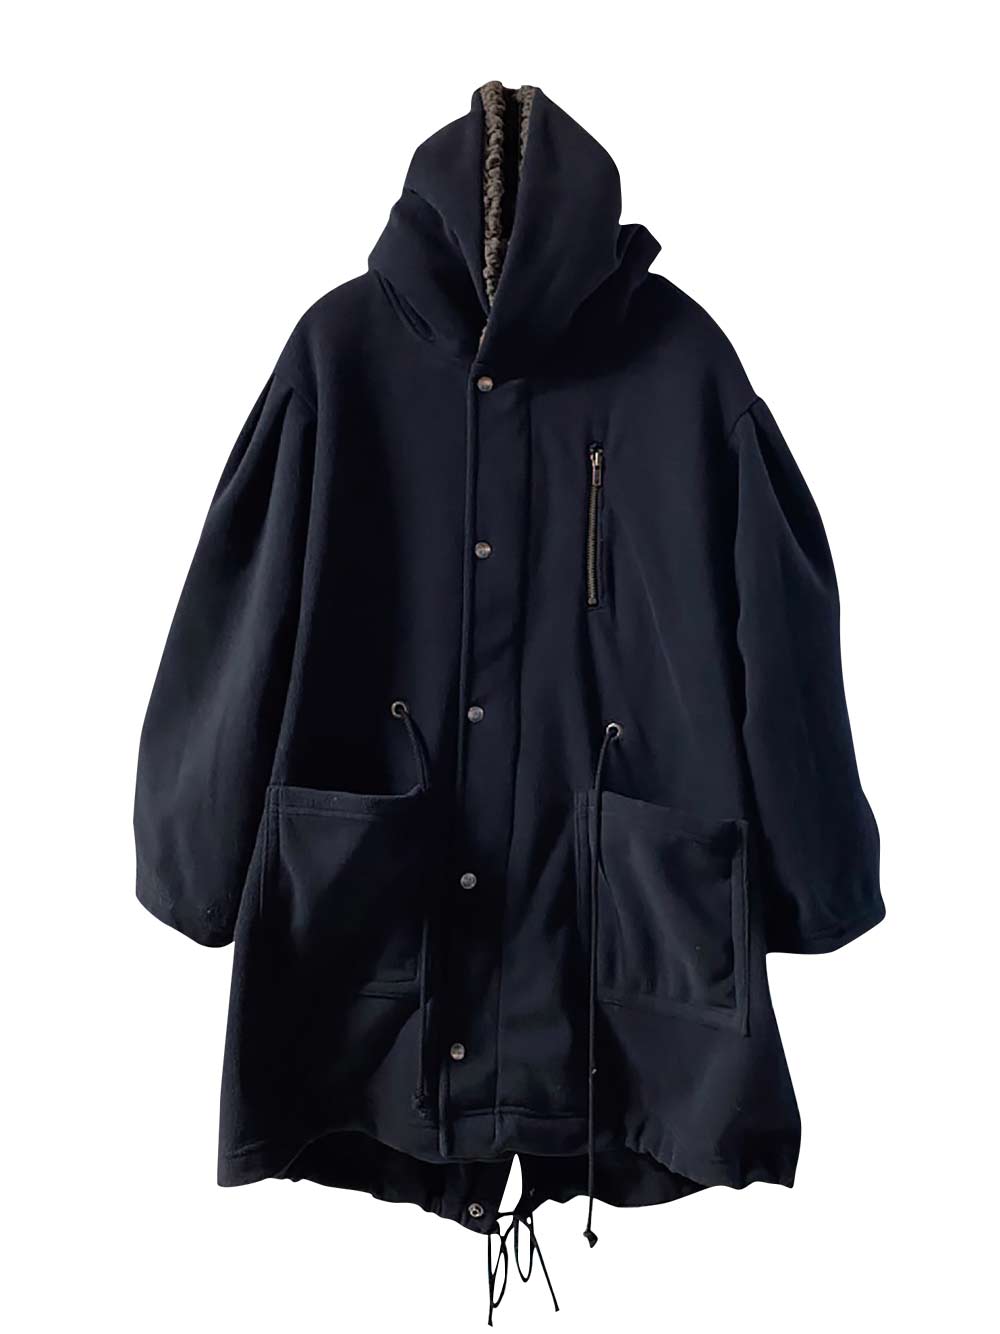 PREORDER: Hooded Black Coat